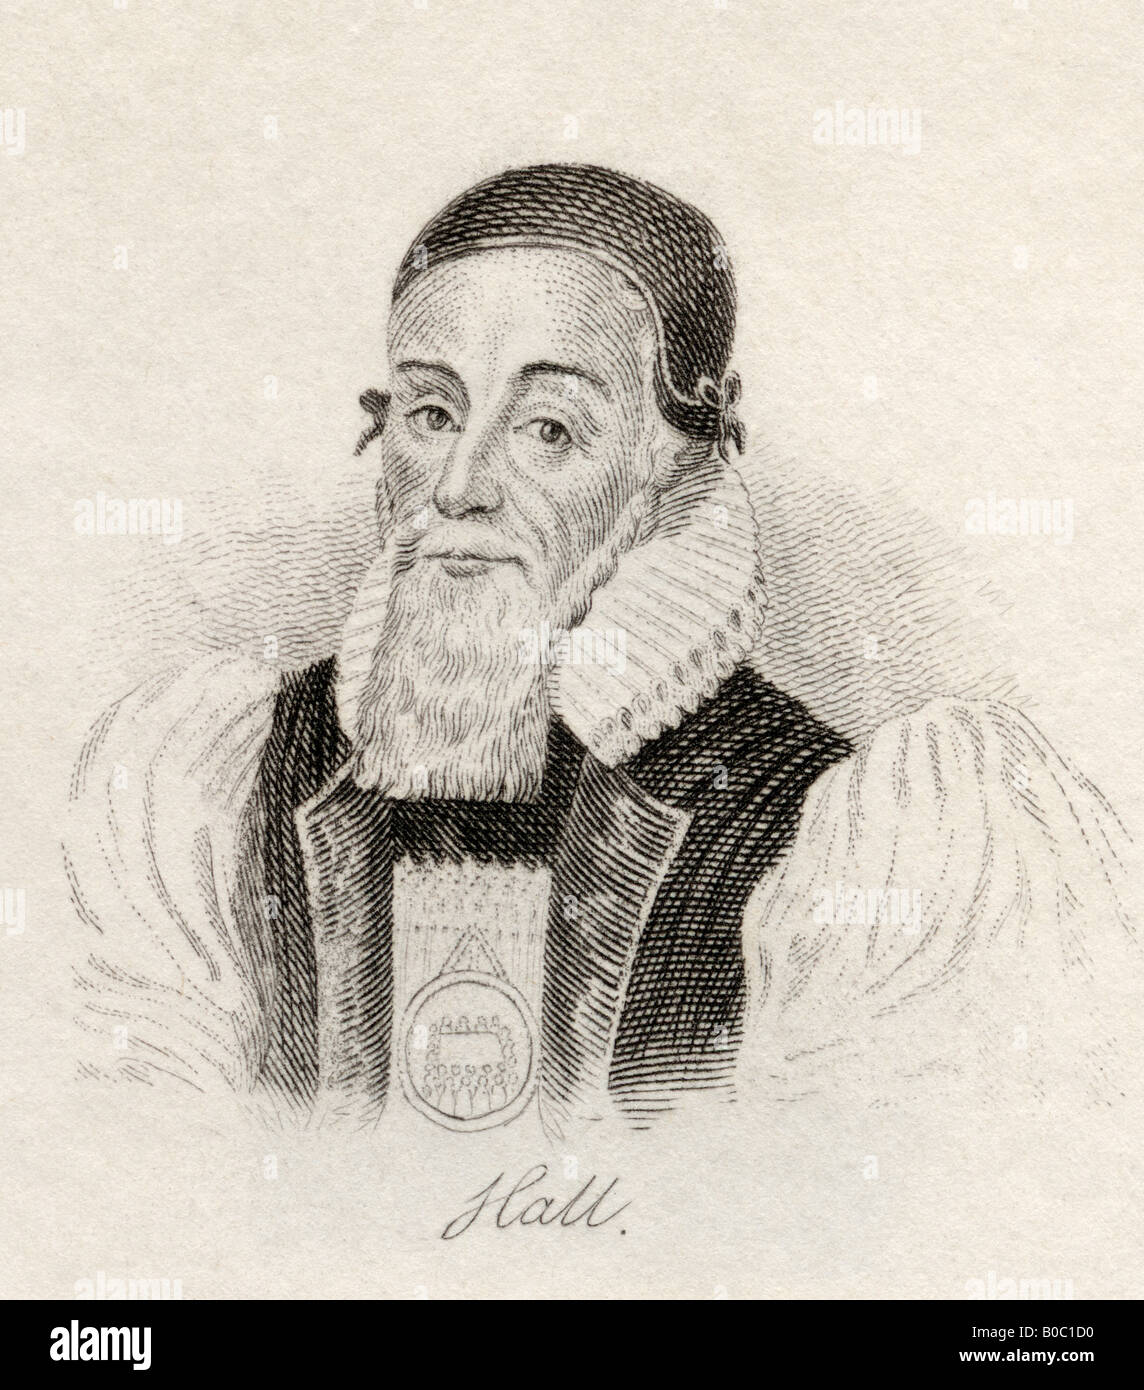 Joseph Hall, 1574-1656. Évêque et satiriste anglais. Tiré du livre Crabbs Historical Dictionary, publié en 1825. Banque D'Images